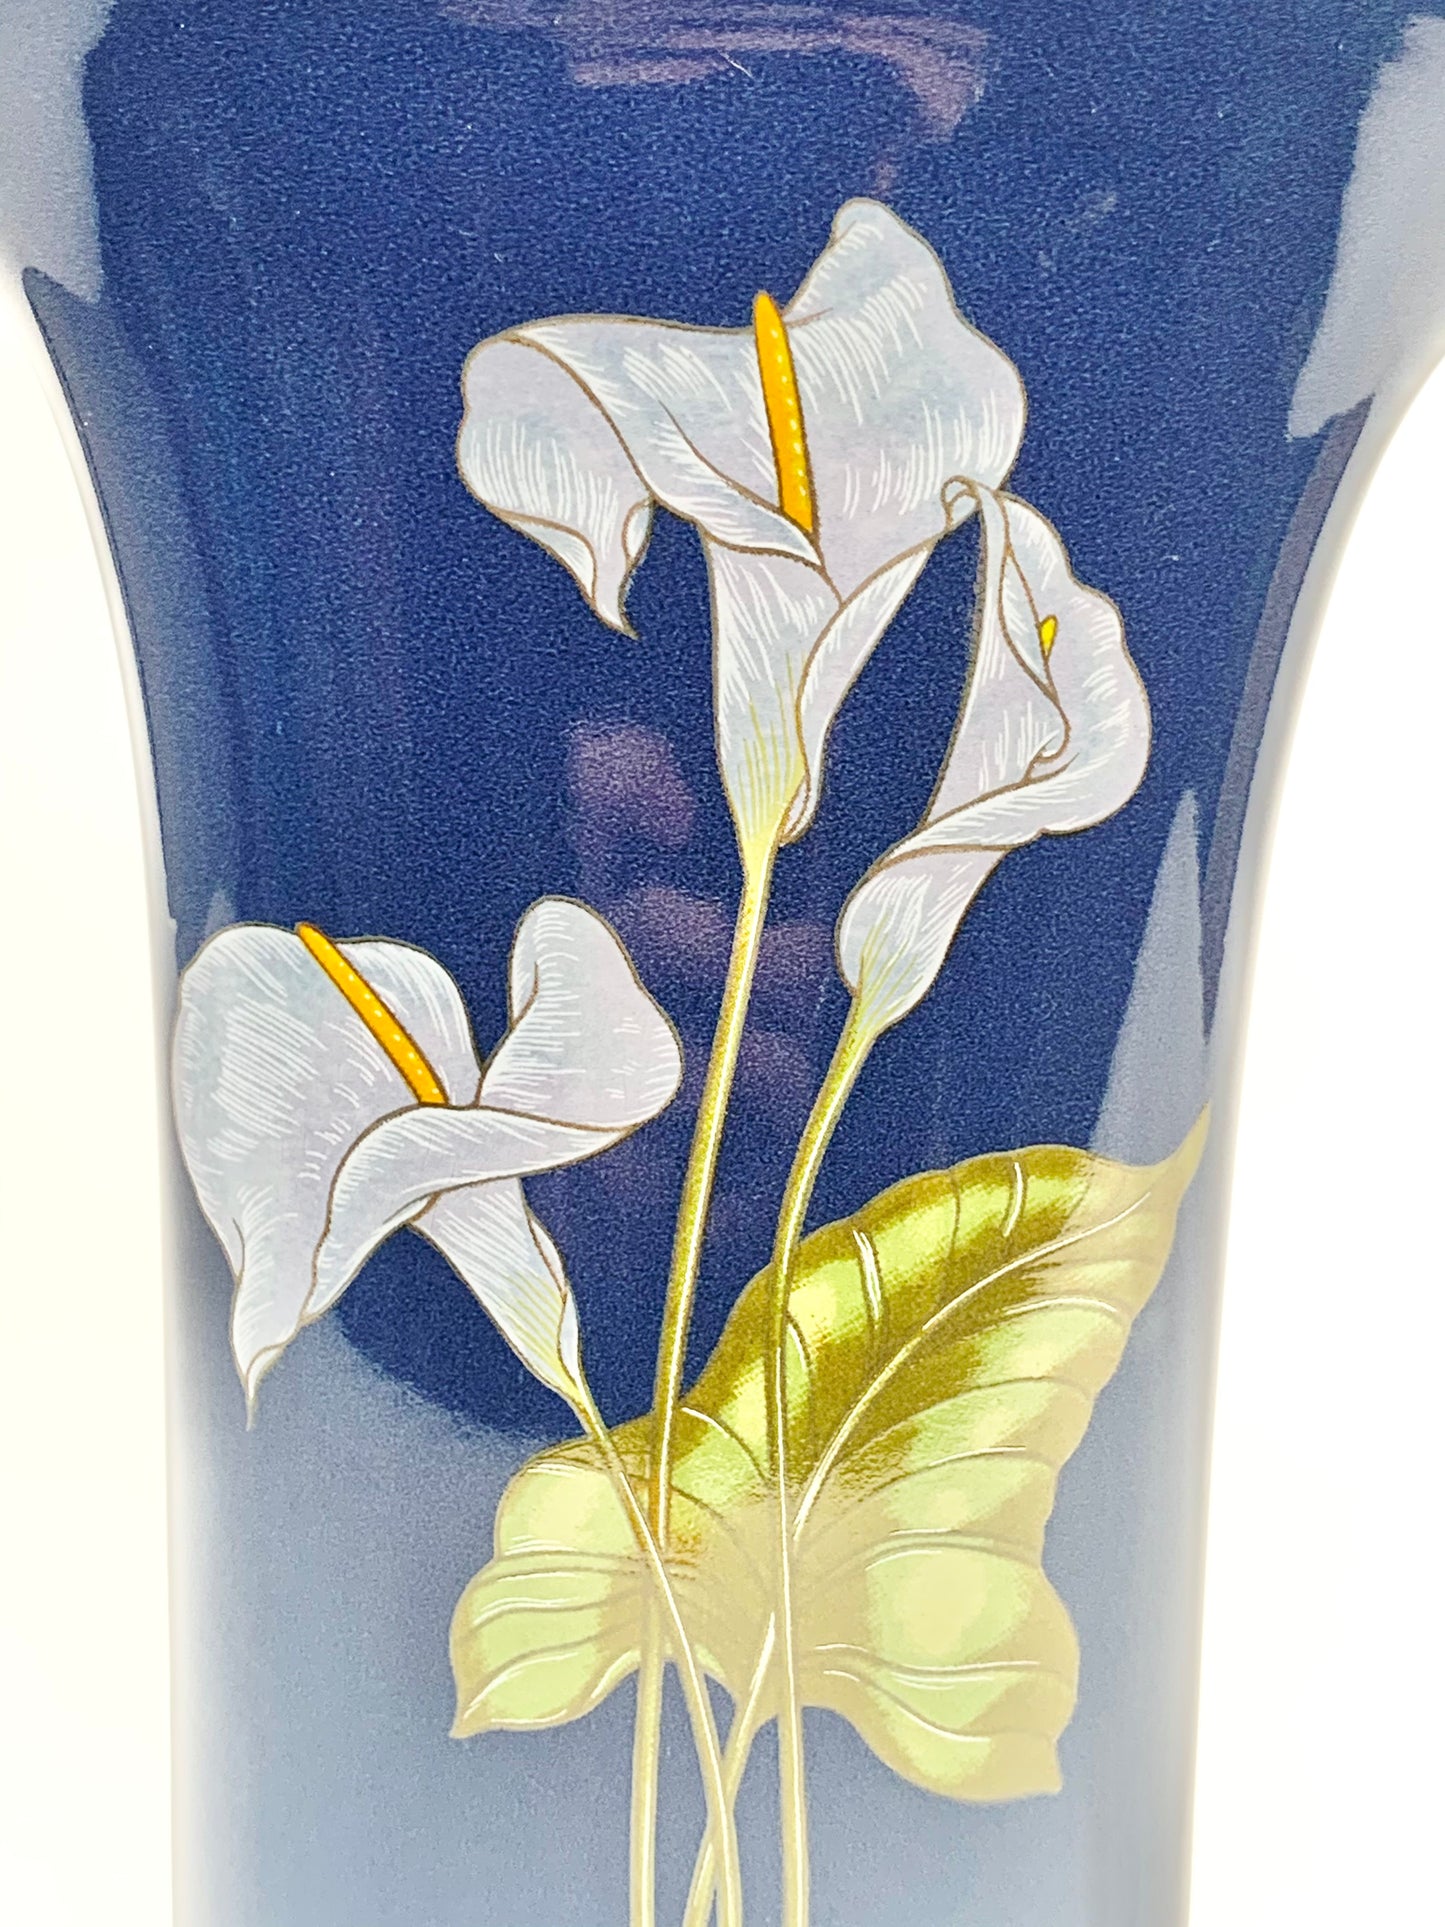 Japanese 80s porcelain vase with laminated floral design